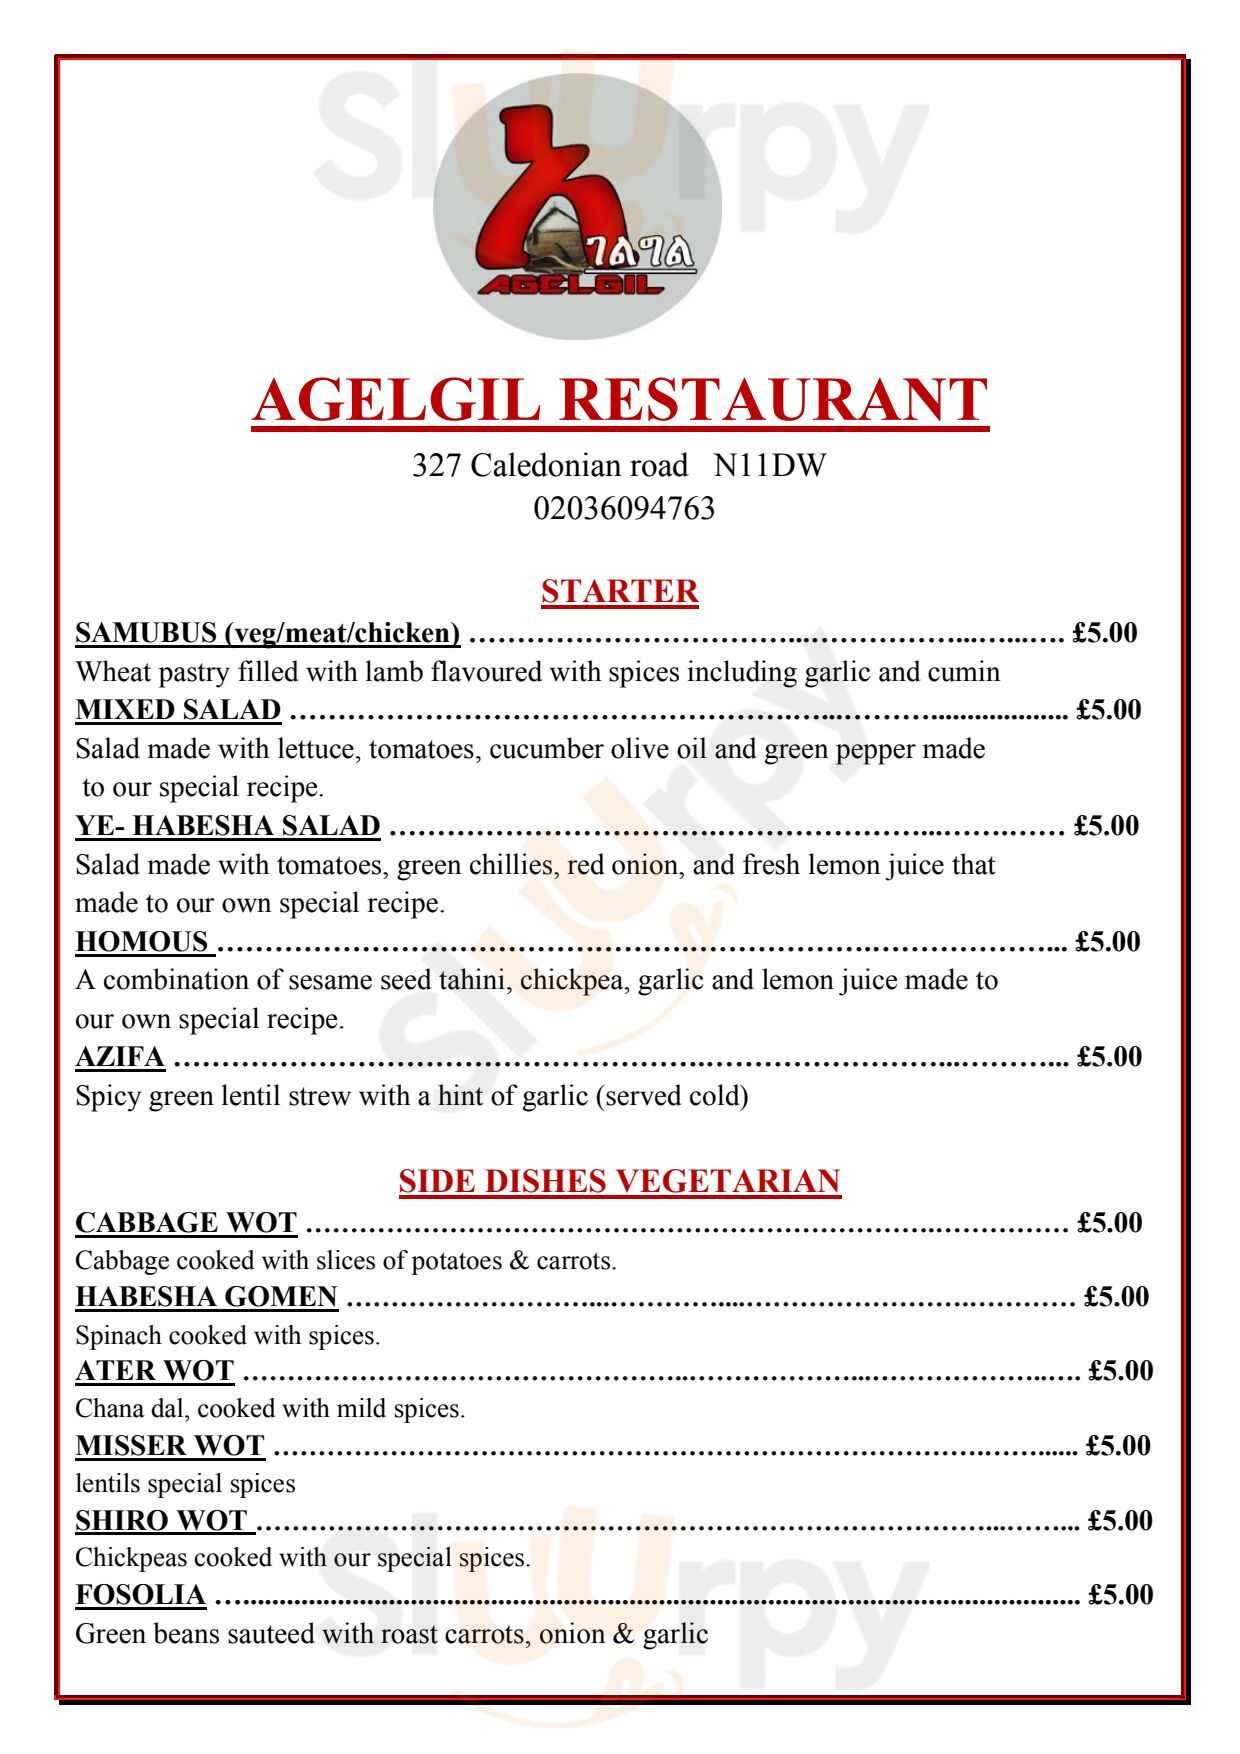 Agelgil Ethiopian Resturant London Menu - 1